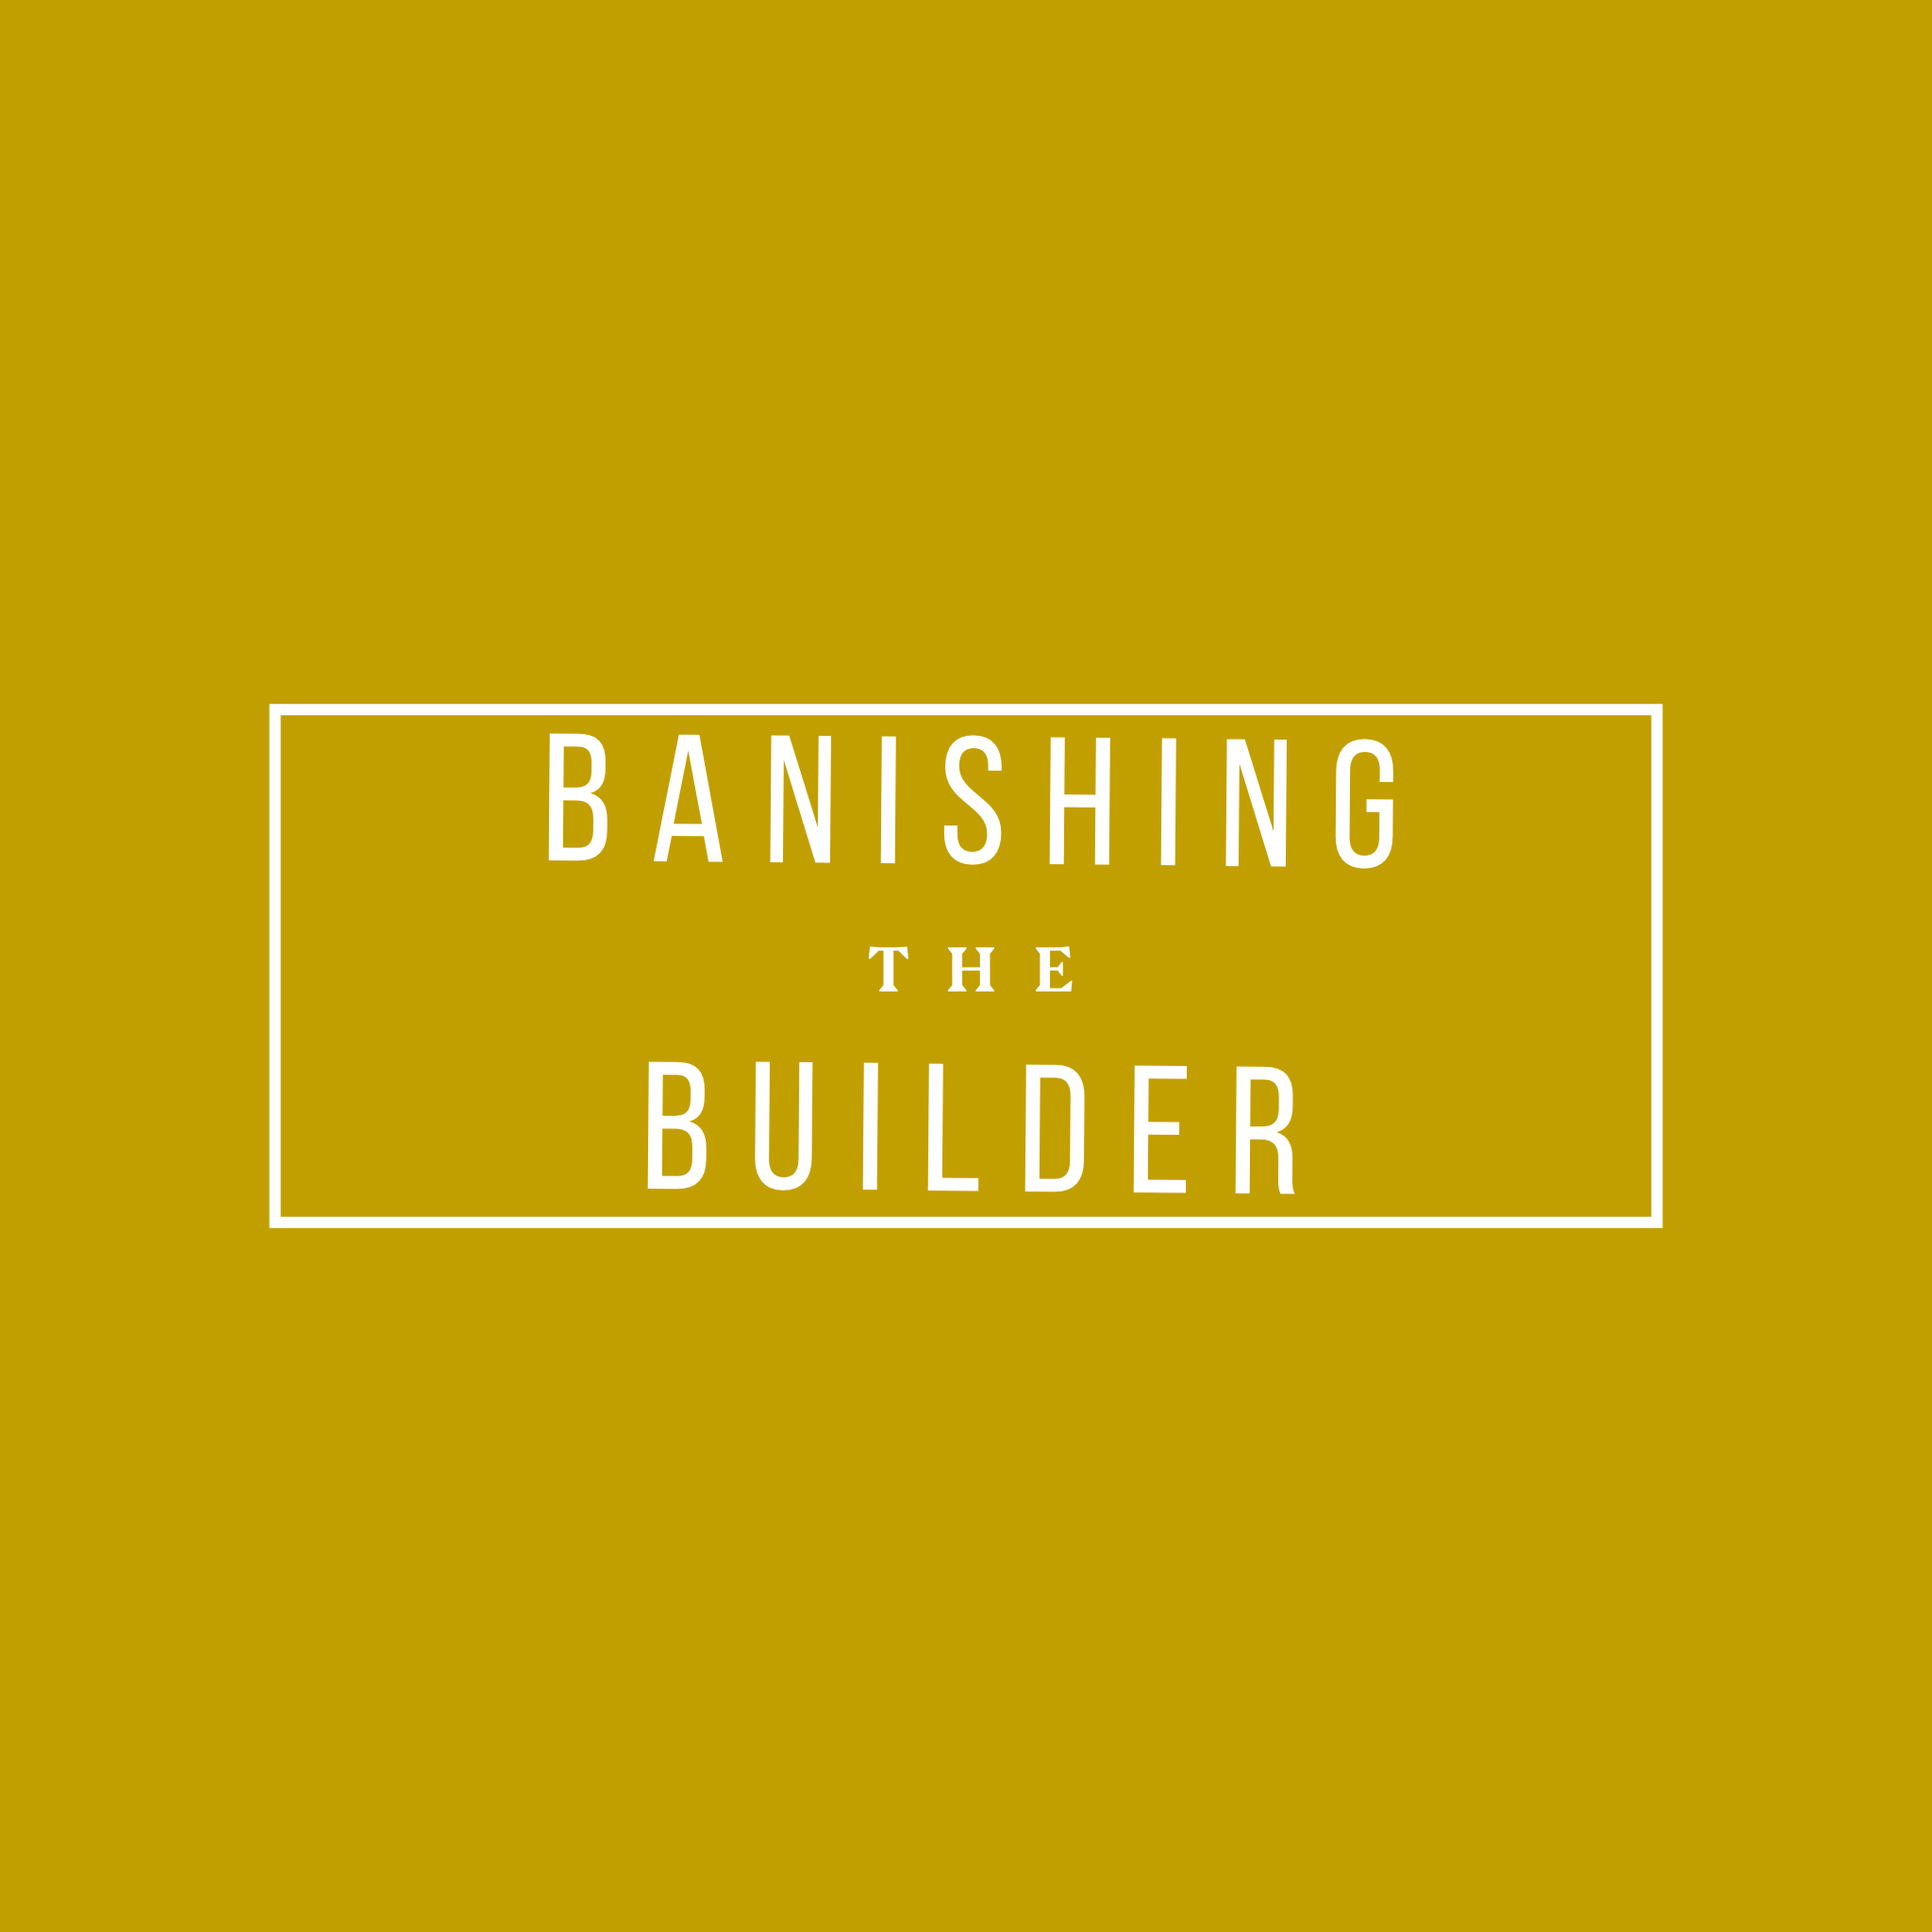 Banishing the Builder